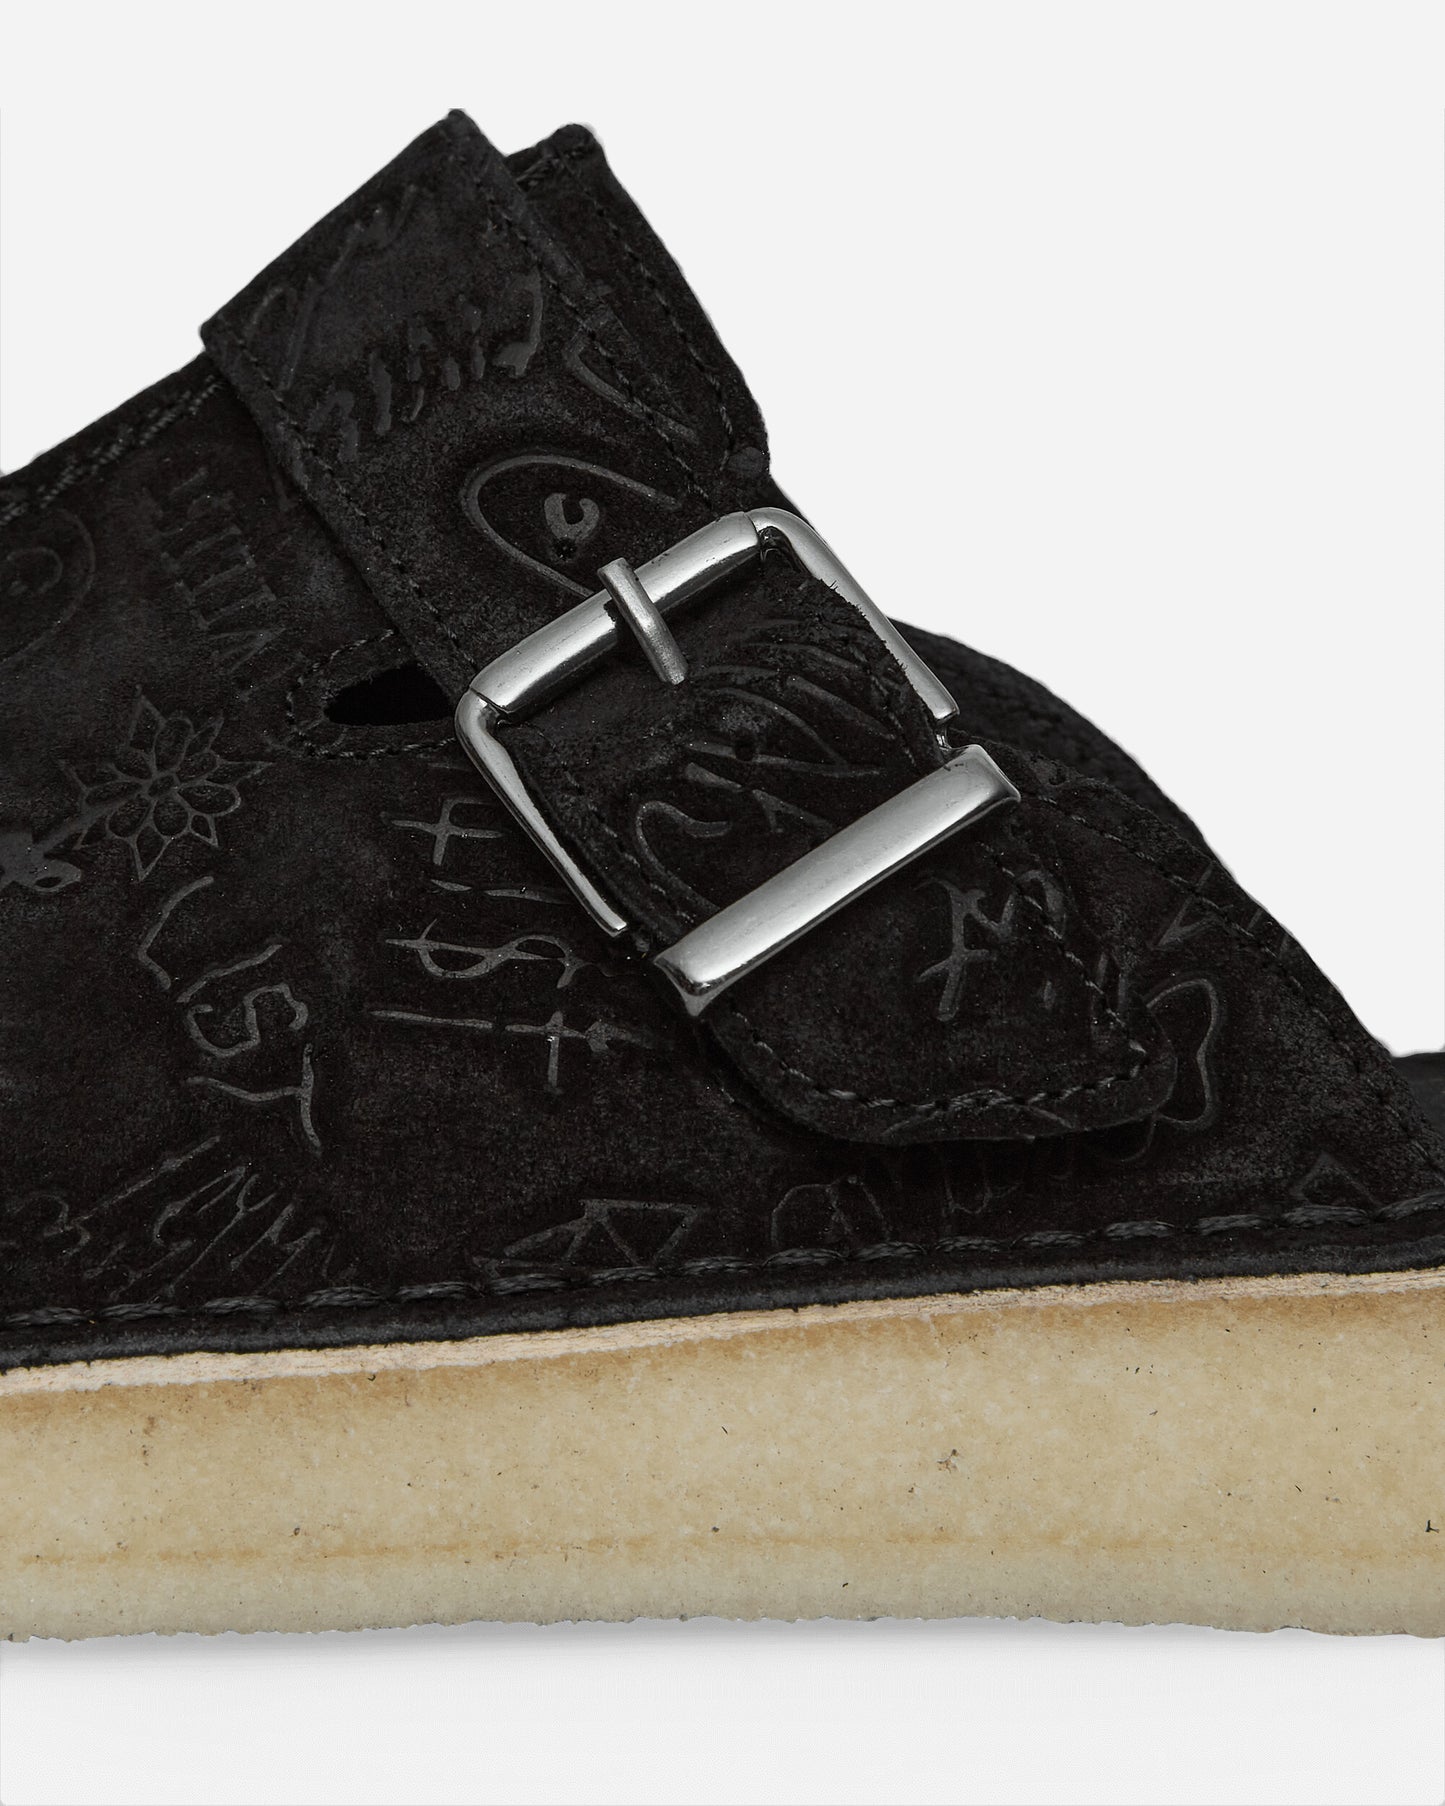 Clarks Trek Mule X Civilist Black Deboss Sde Classic Shoes Laced Up 177774 1